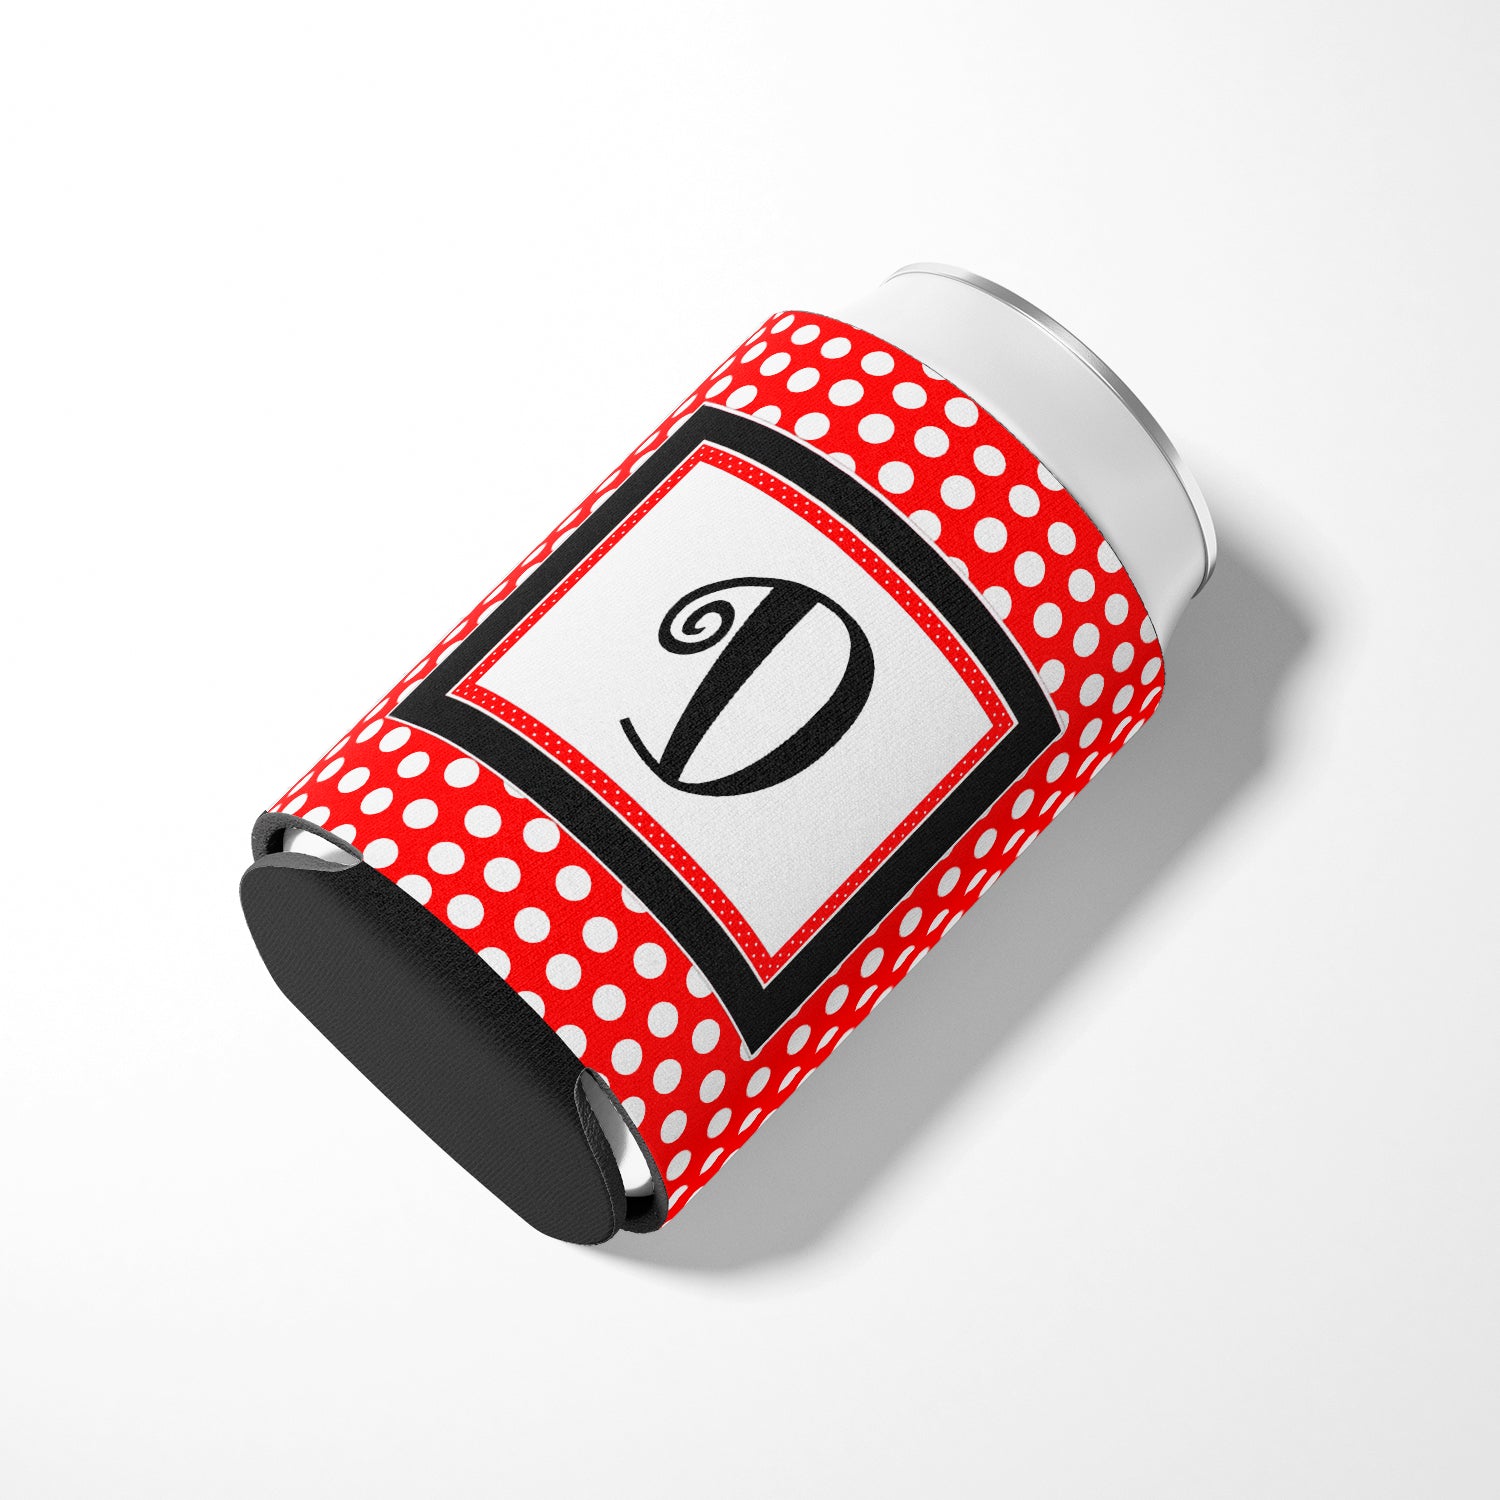 Letter D Initial Monogram - Red Black Polka Dots Can or Bottle Beverage Insulator Hugger.